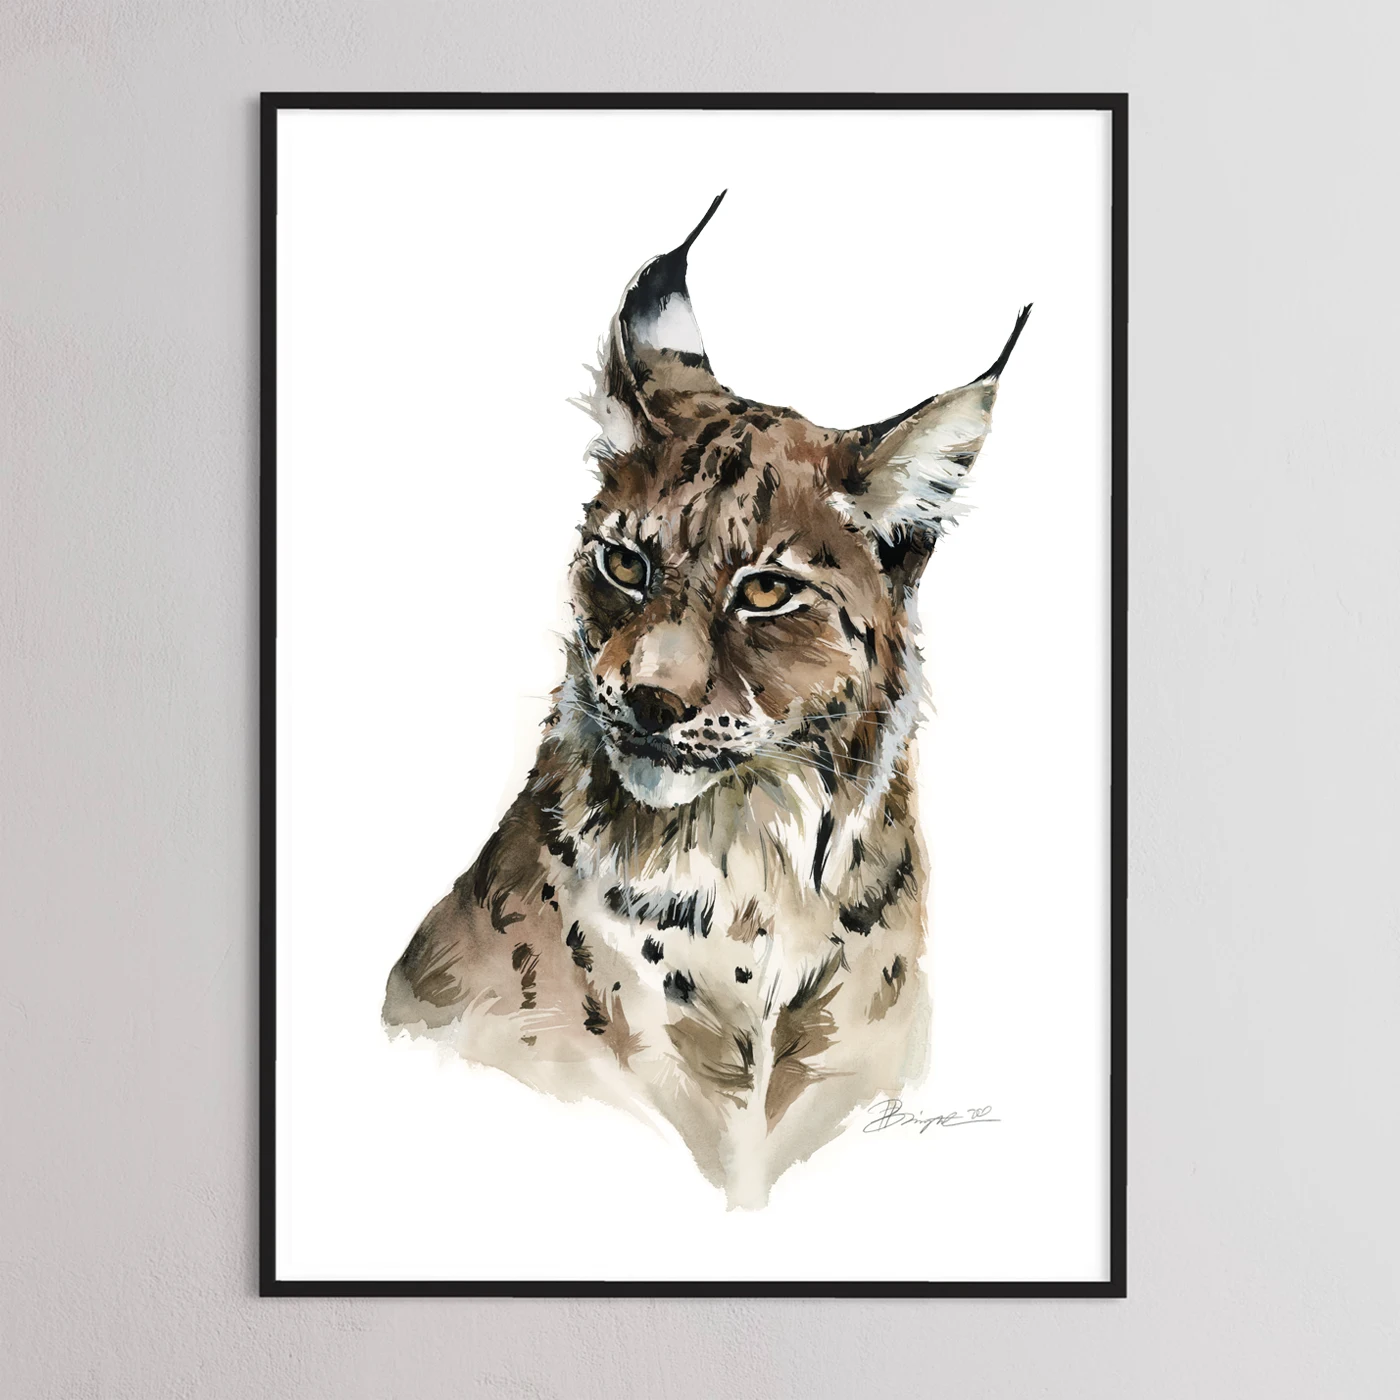 Lynx print by Polina Bright